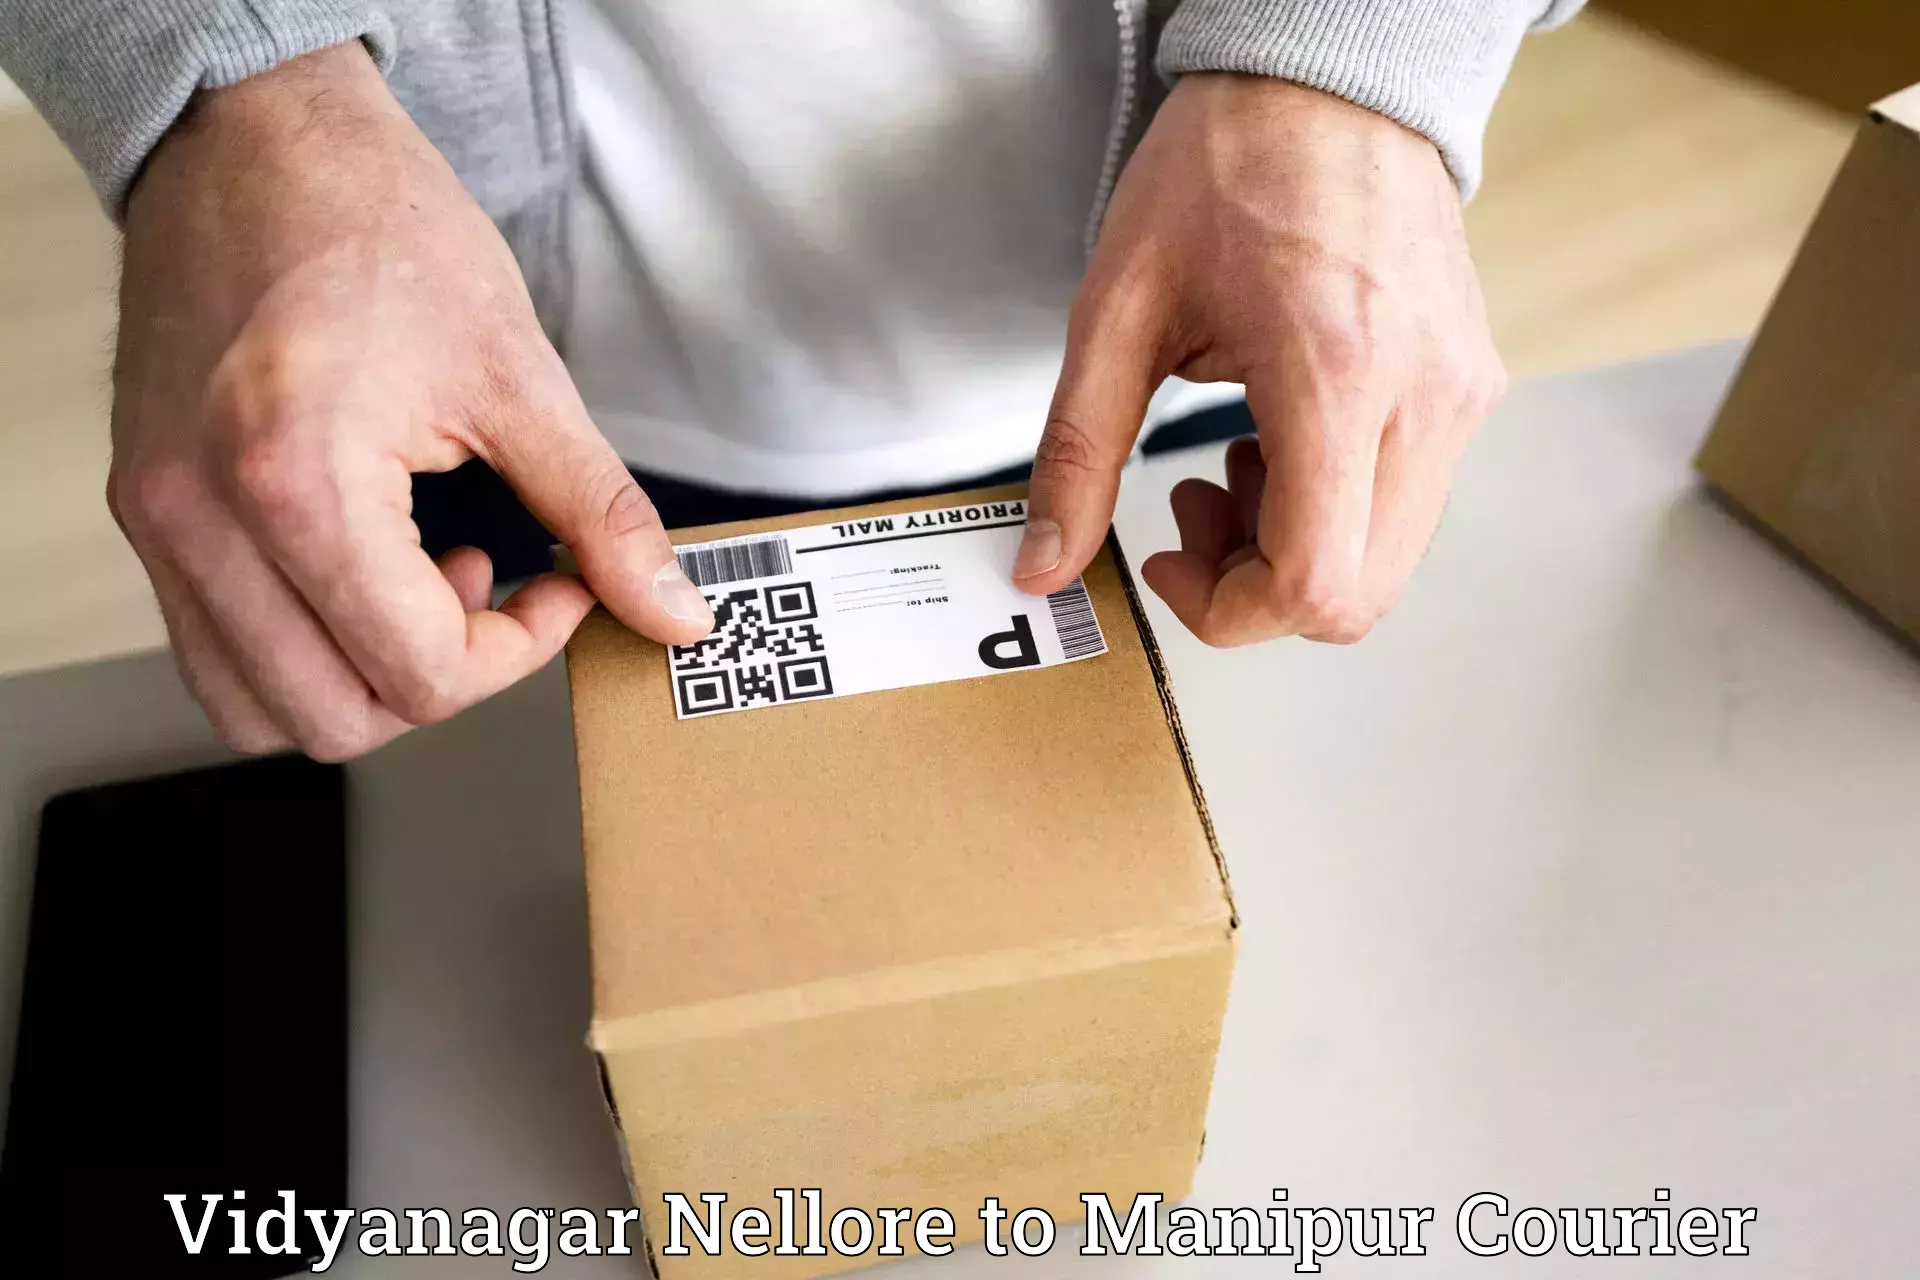 Customer-focused courier Vidyanagar Nellore to Manipur